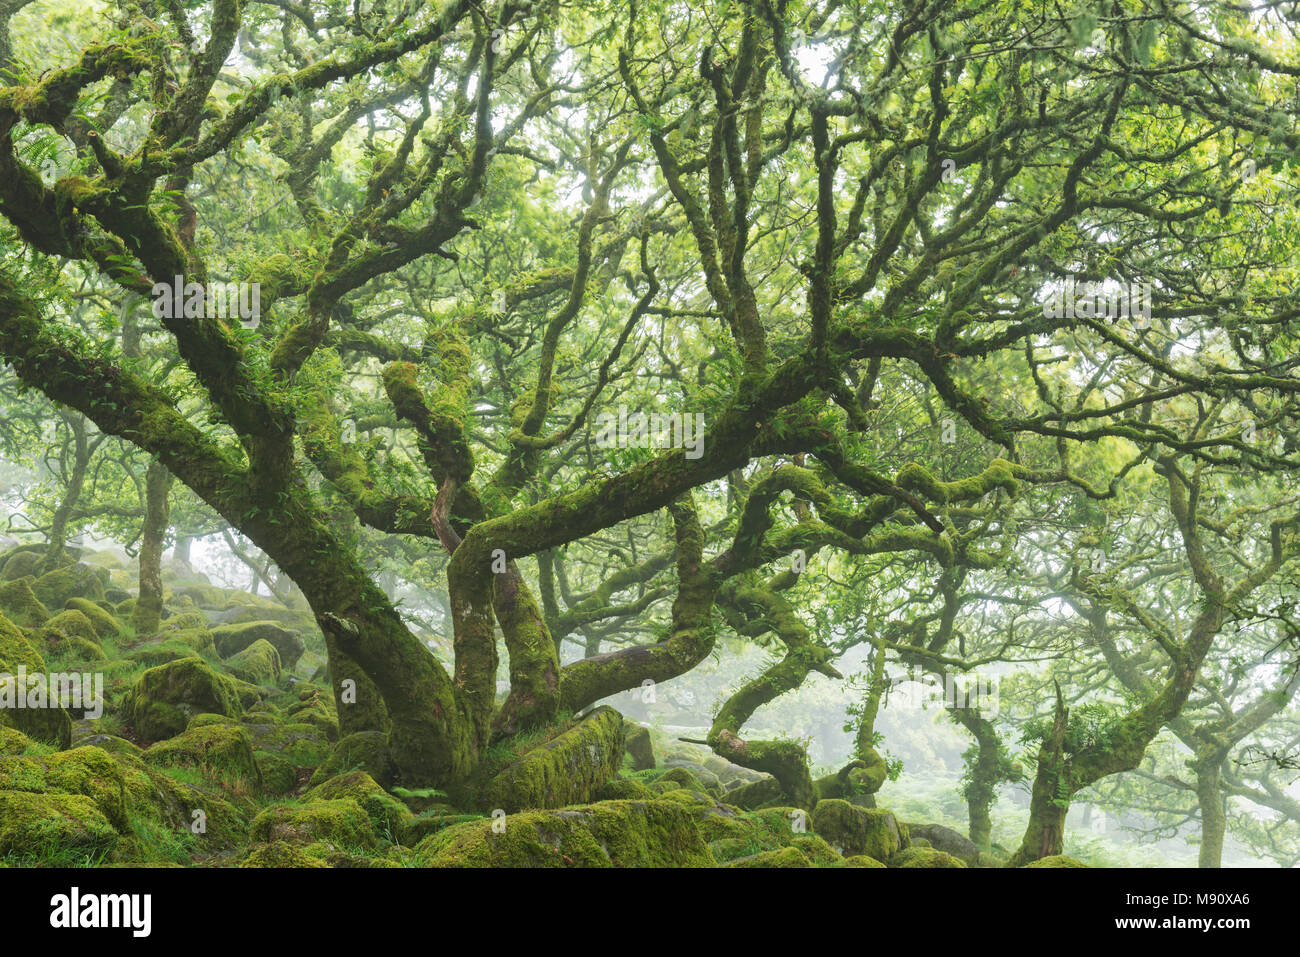 Cubiertas de musgo de roble, torcidos raquíticos árboles que crecen en la madera Wistman SEIC, Parque Nacional de Dartmoor, Devon, Inglaterra. Verano (julio de 2017). Foto de stock